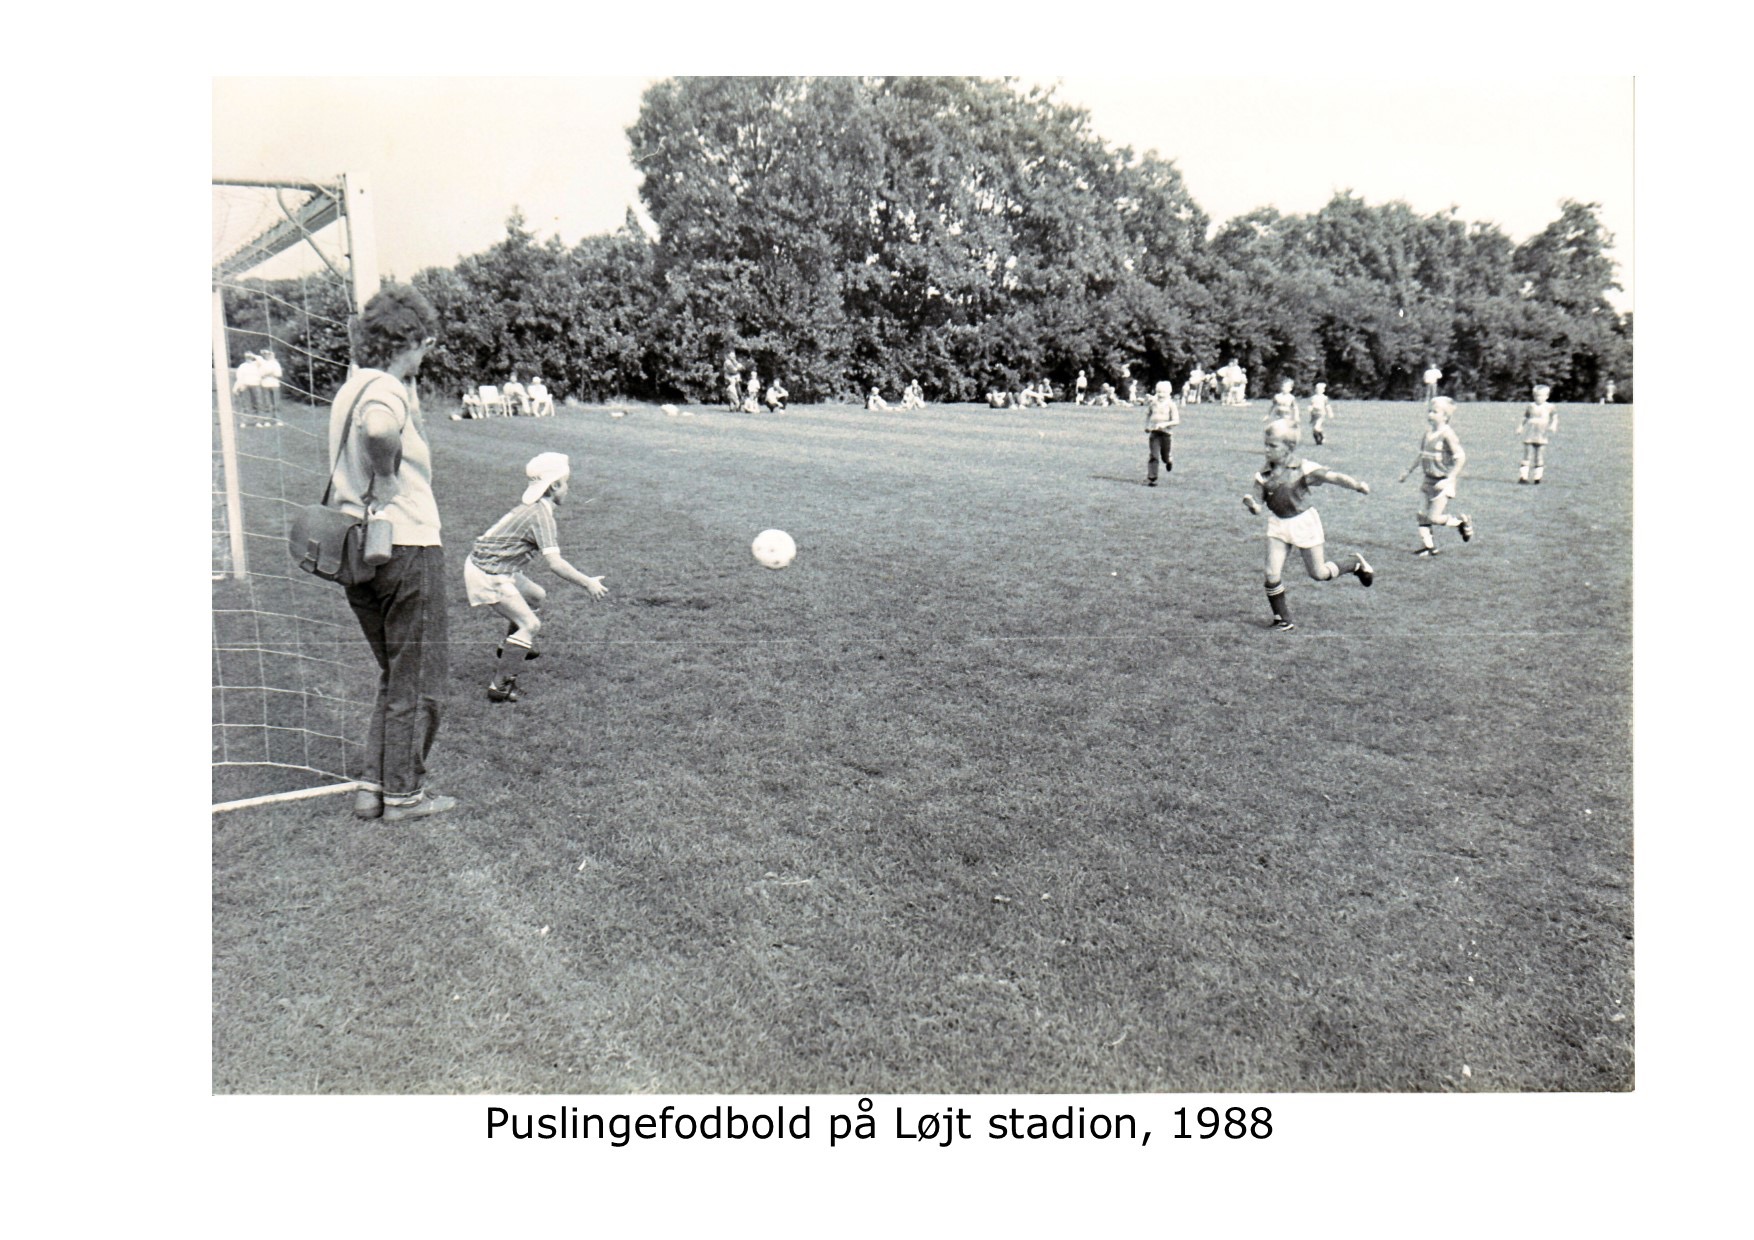 Puslingefodbold på Løjt Stadion 1988 